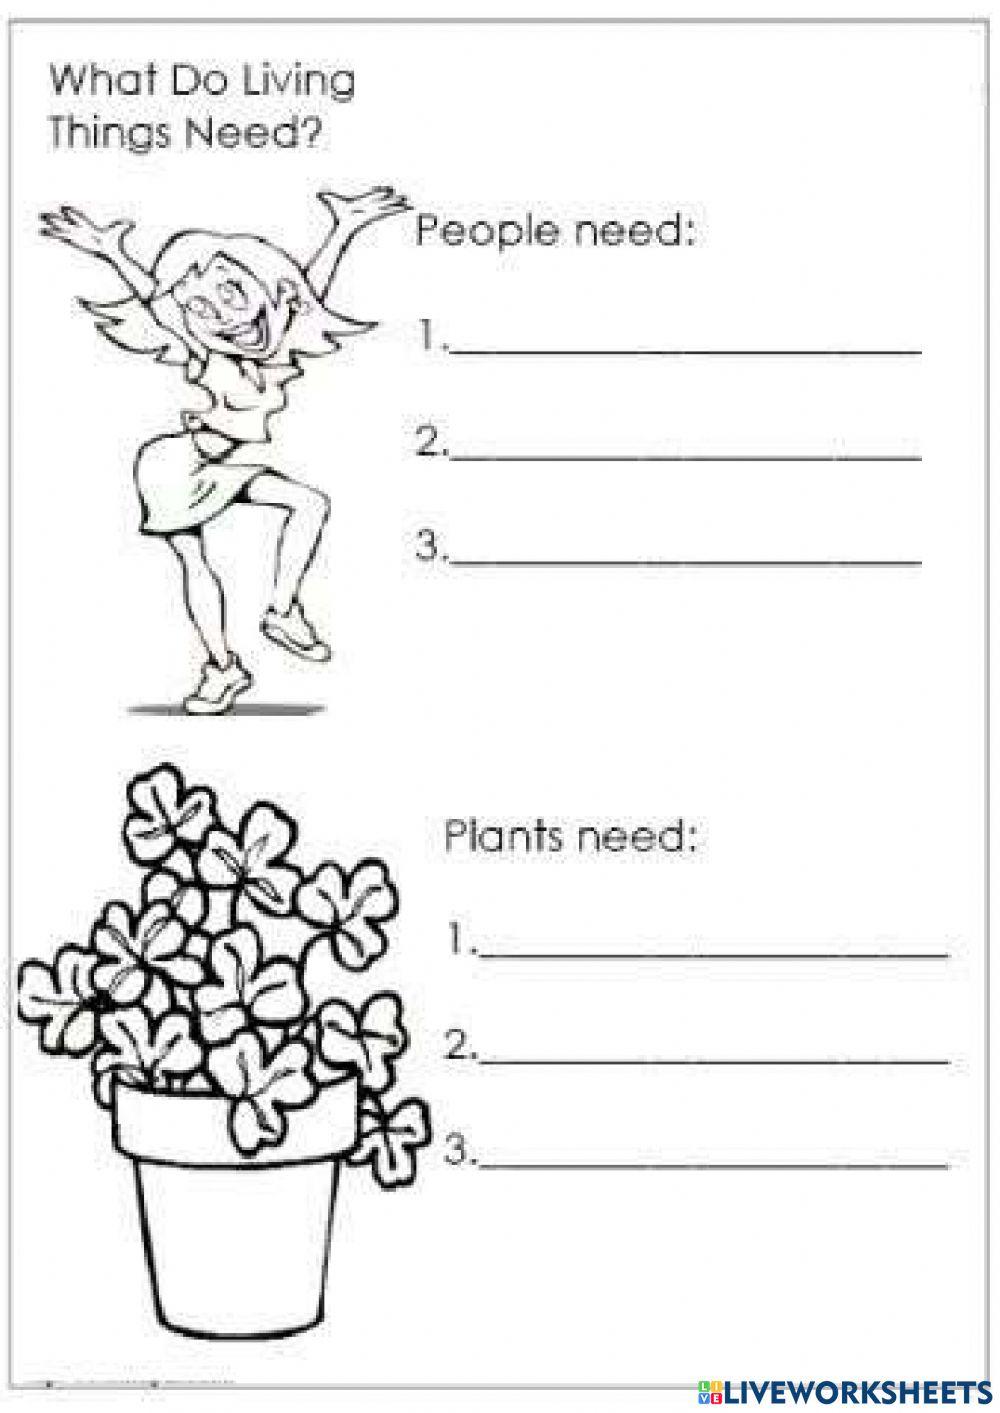 Plants needs